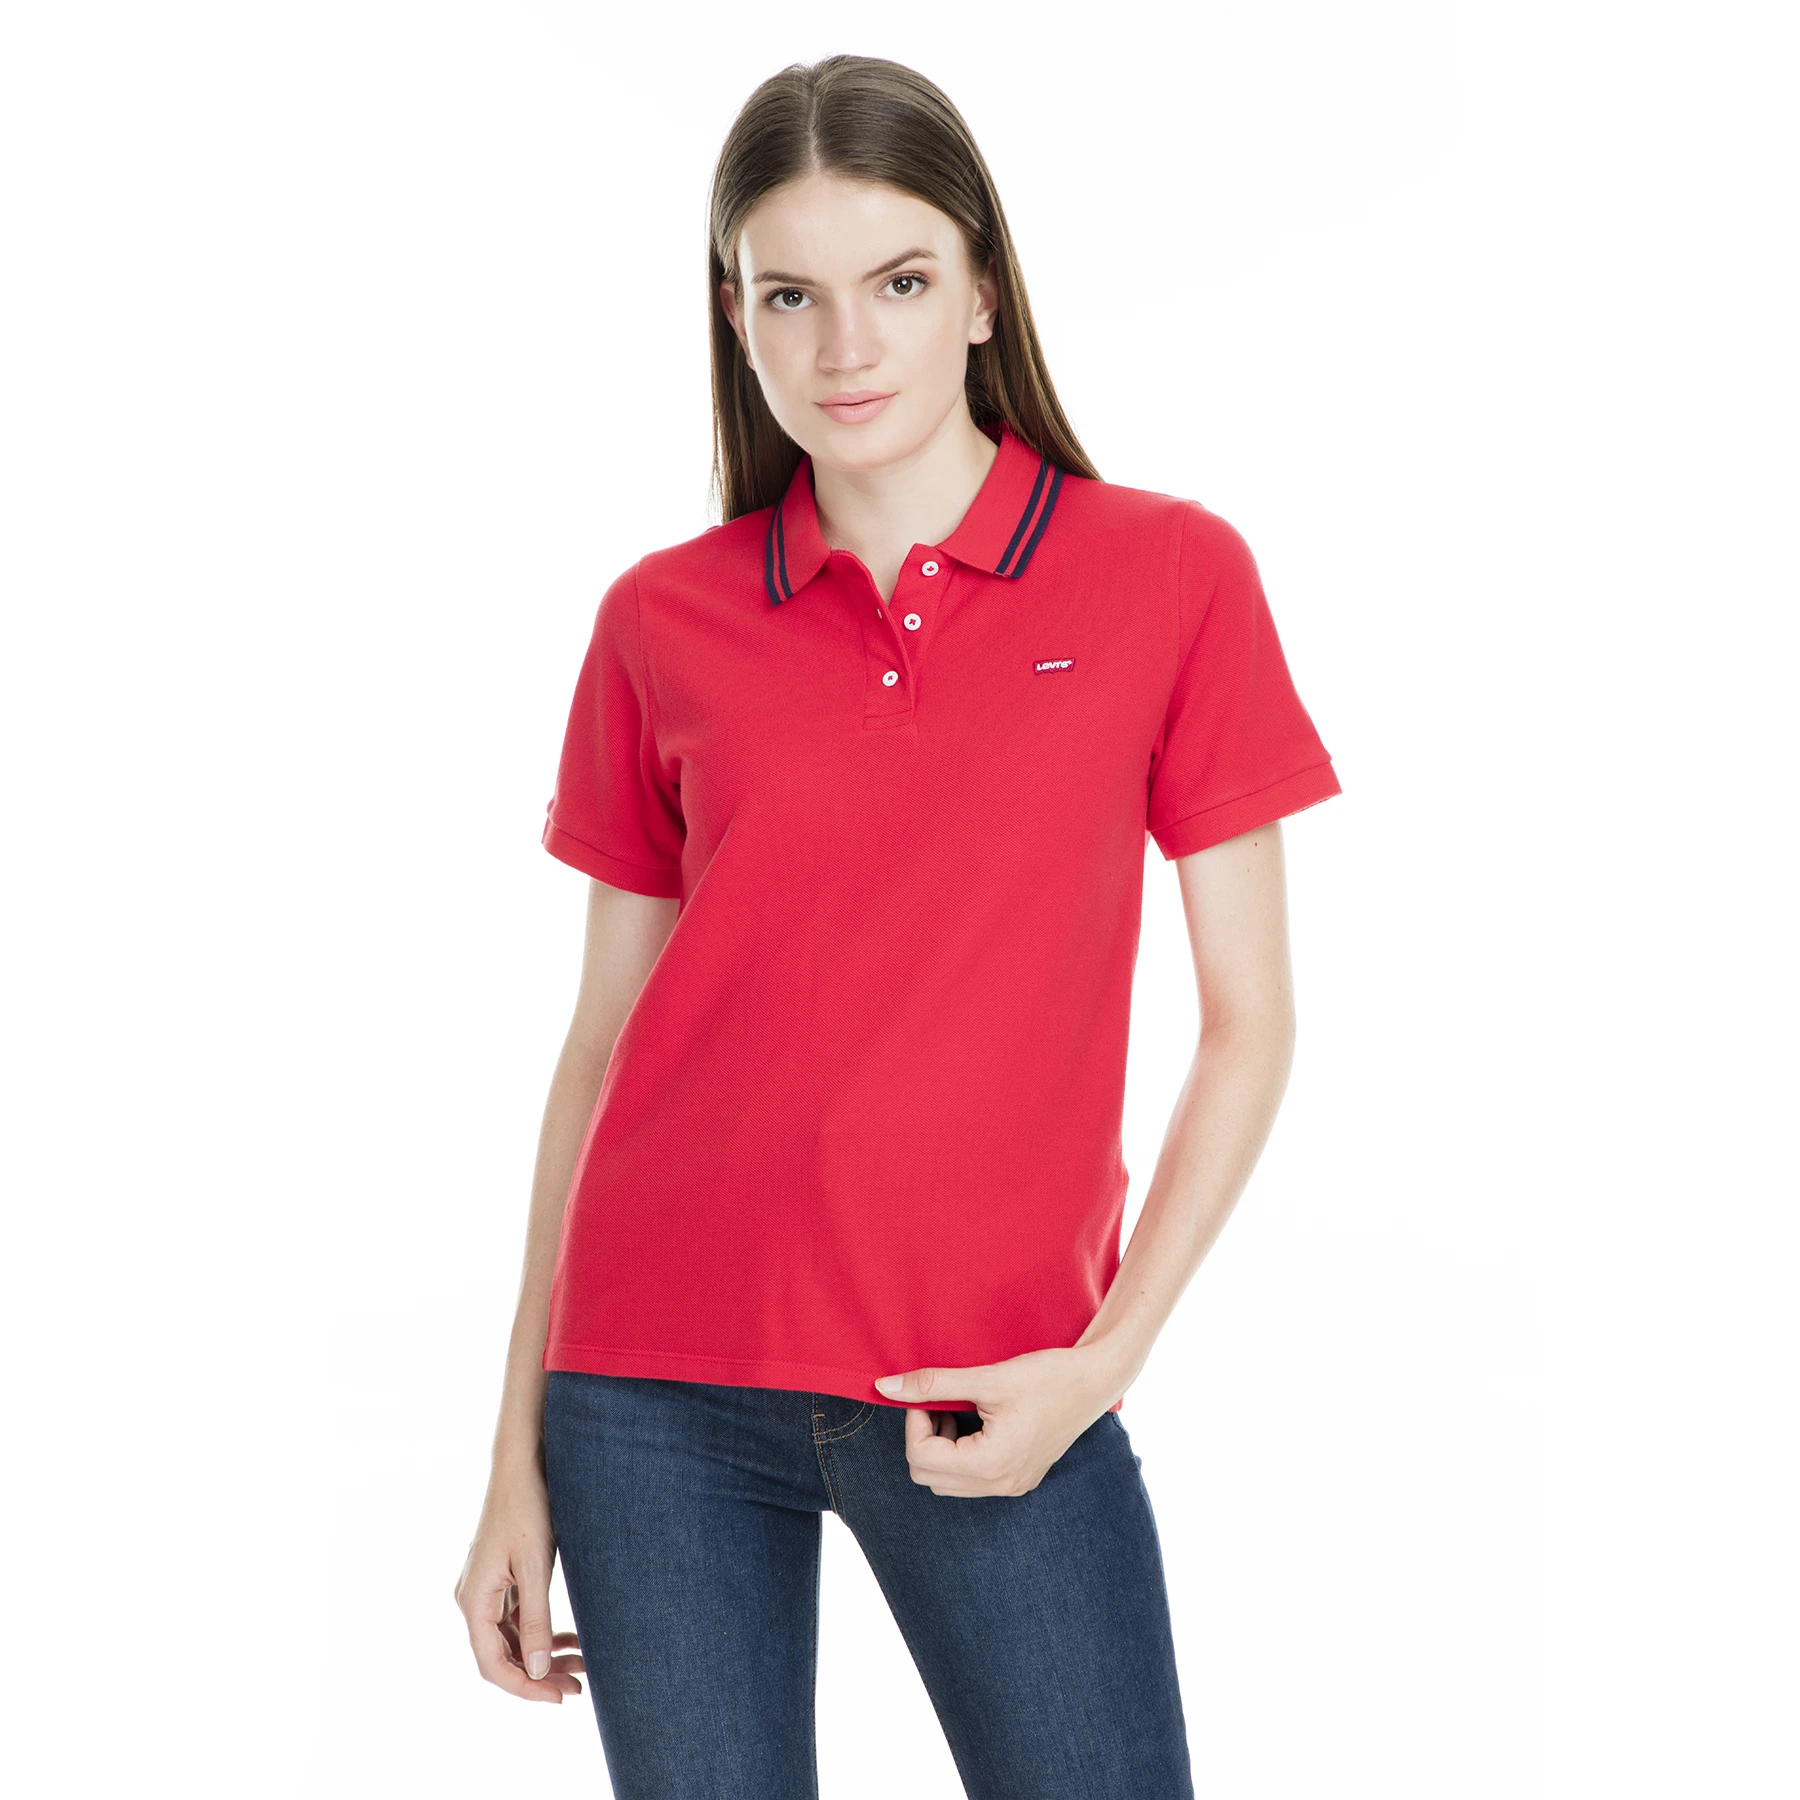 Camiseta de mujer, Polo 74857|Camisas polo| AliExpress